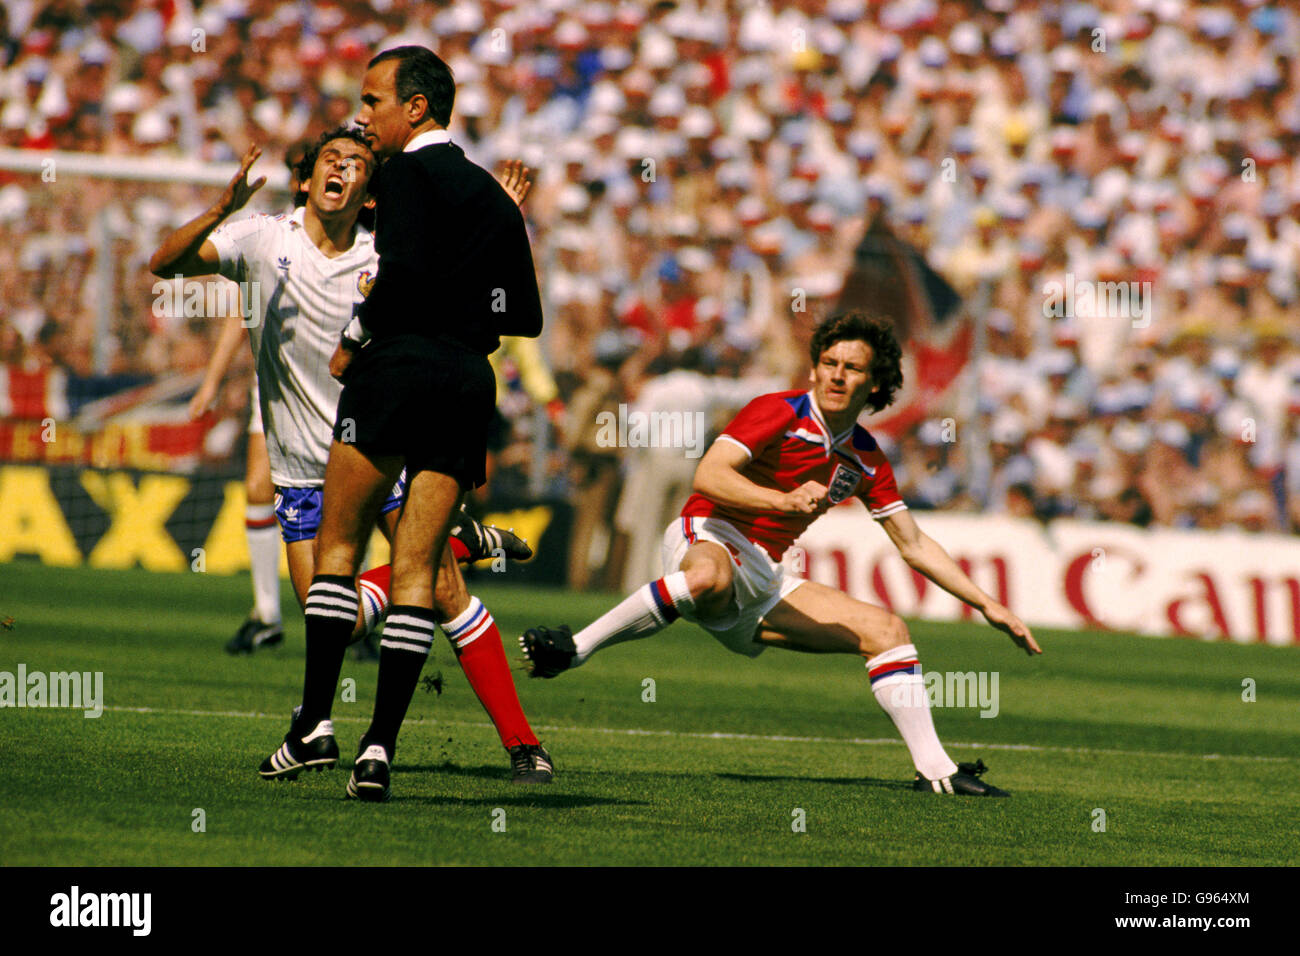 Englands Steve Coppell überfällt Michel Platini aus Frankreich, aber der Schiedsrichter verschließt die Augen für den Vorfall. Schiedsrichter ist Antonio Jose da Silva Garrido aus Portugal. Stockfoto